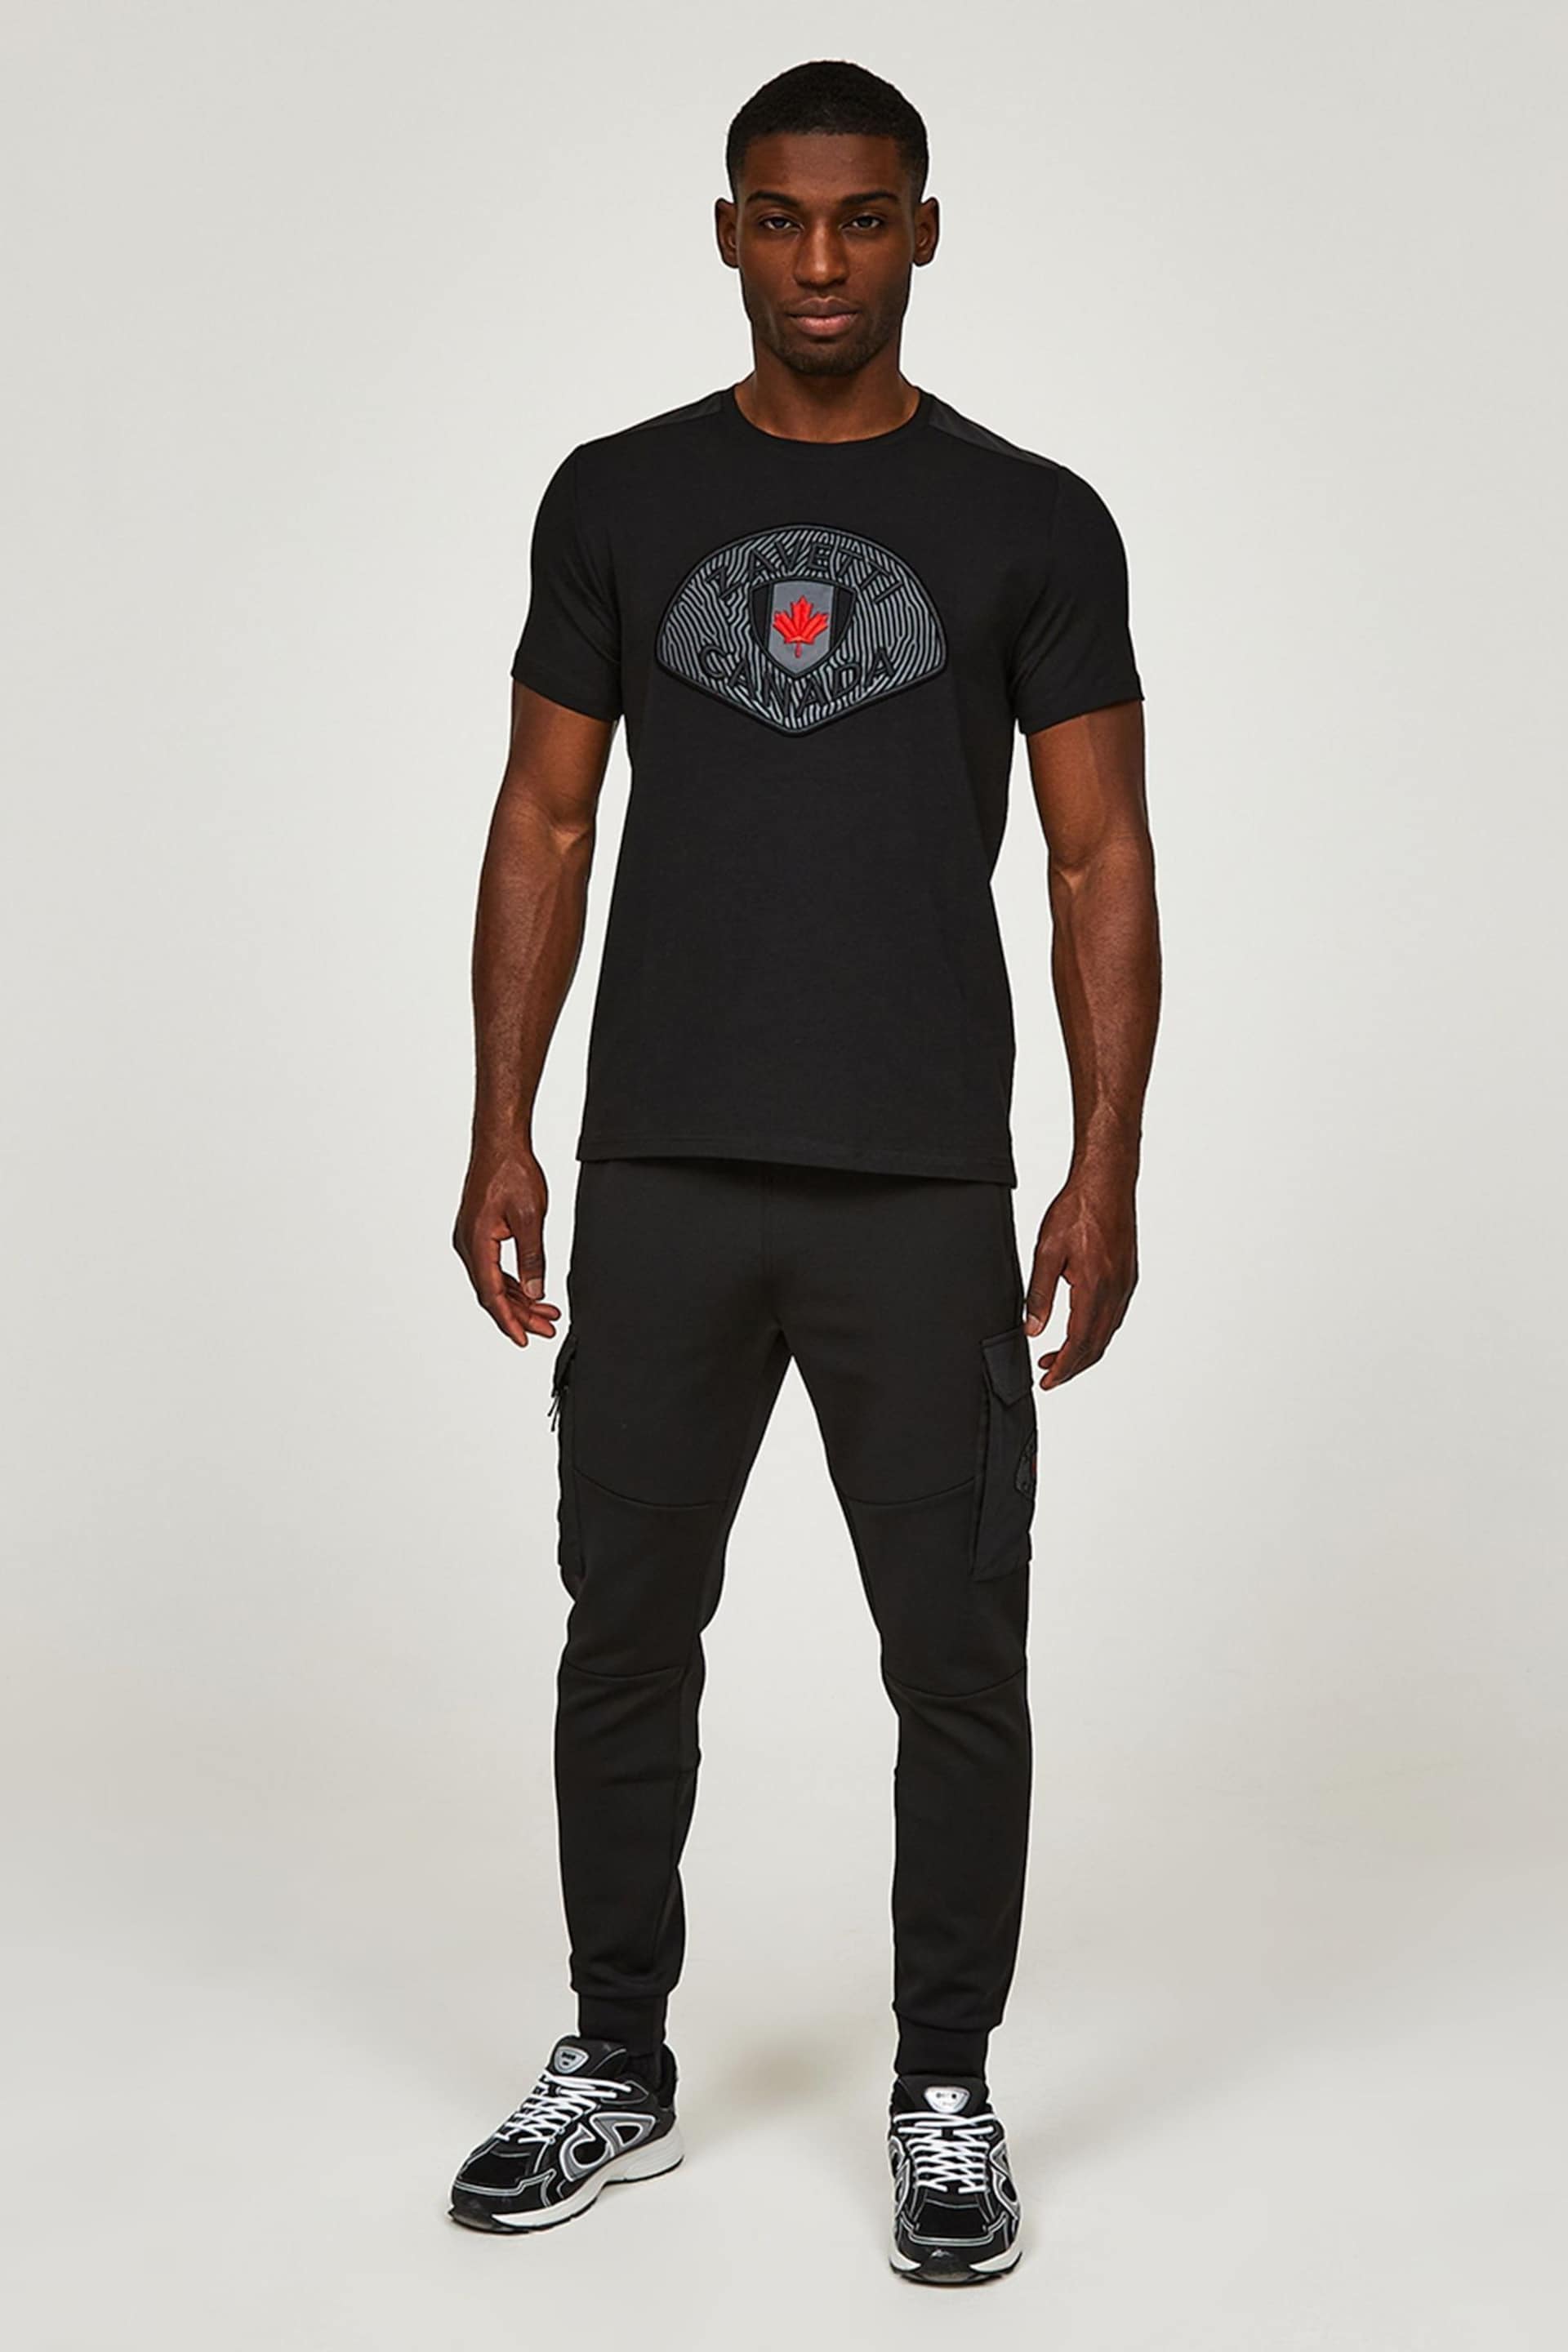 Zavetti Canada Black Levito T-Shirt - Image 4 of 6